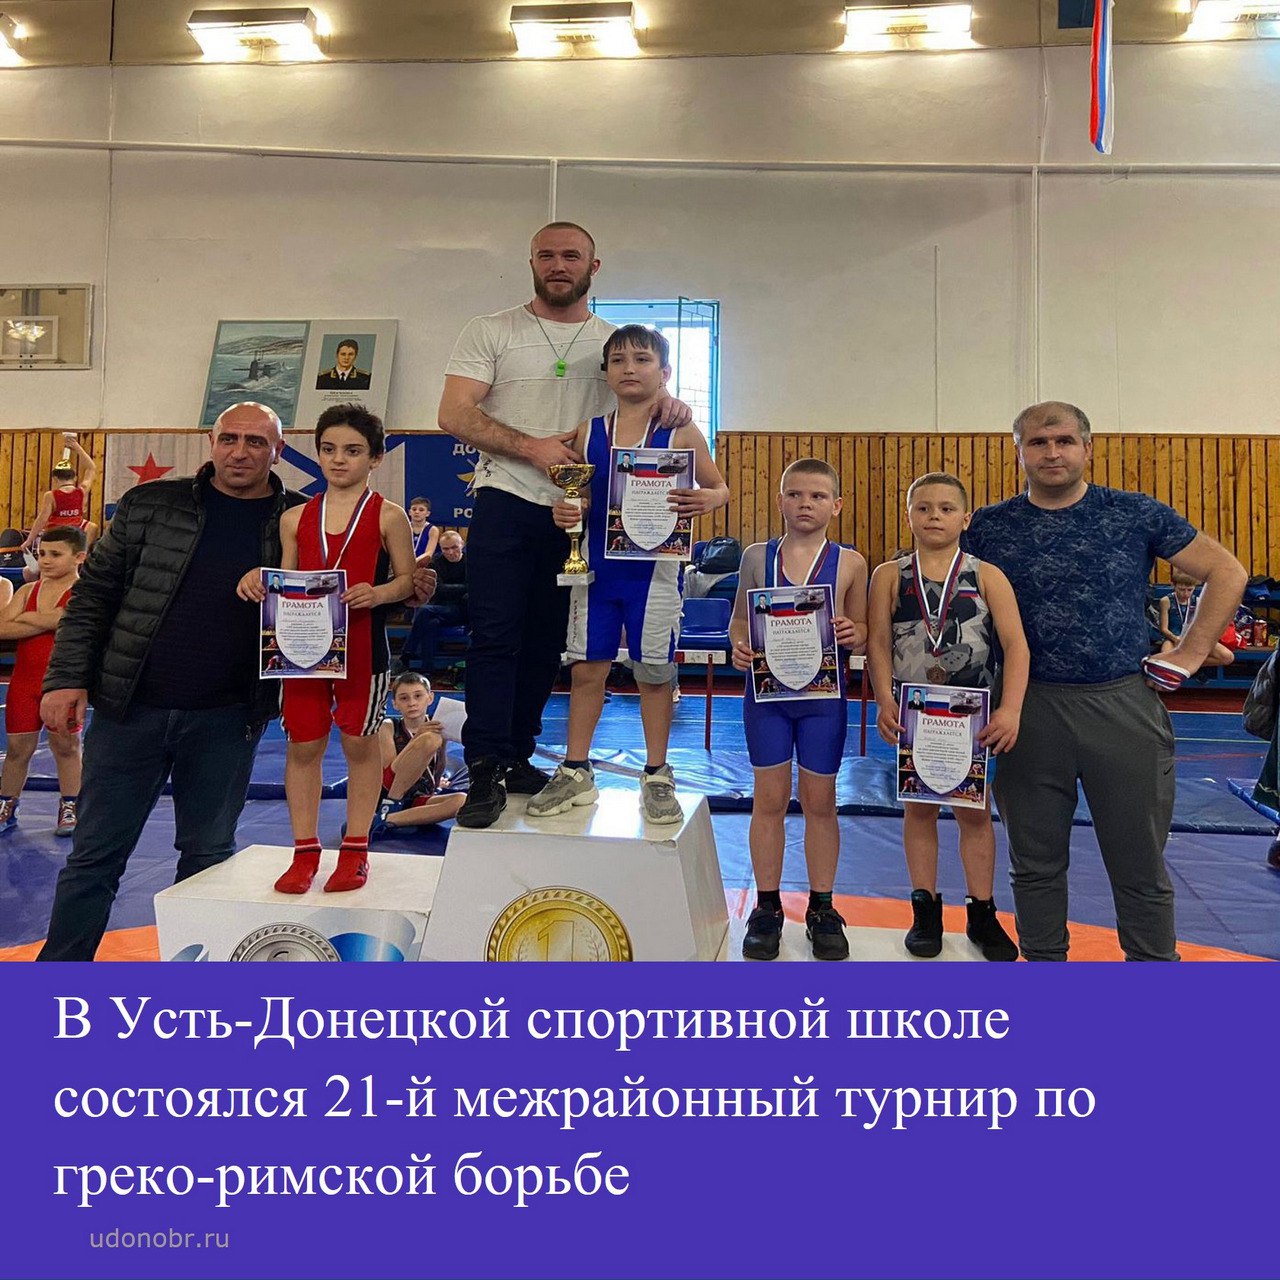 В Усть-Донецкой спортивной школе состоялся 21-й межрайонный турнир по греко-римской борьбе